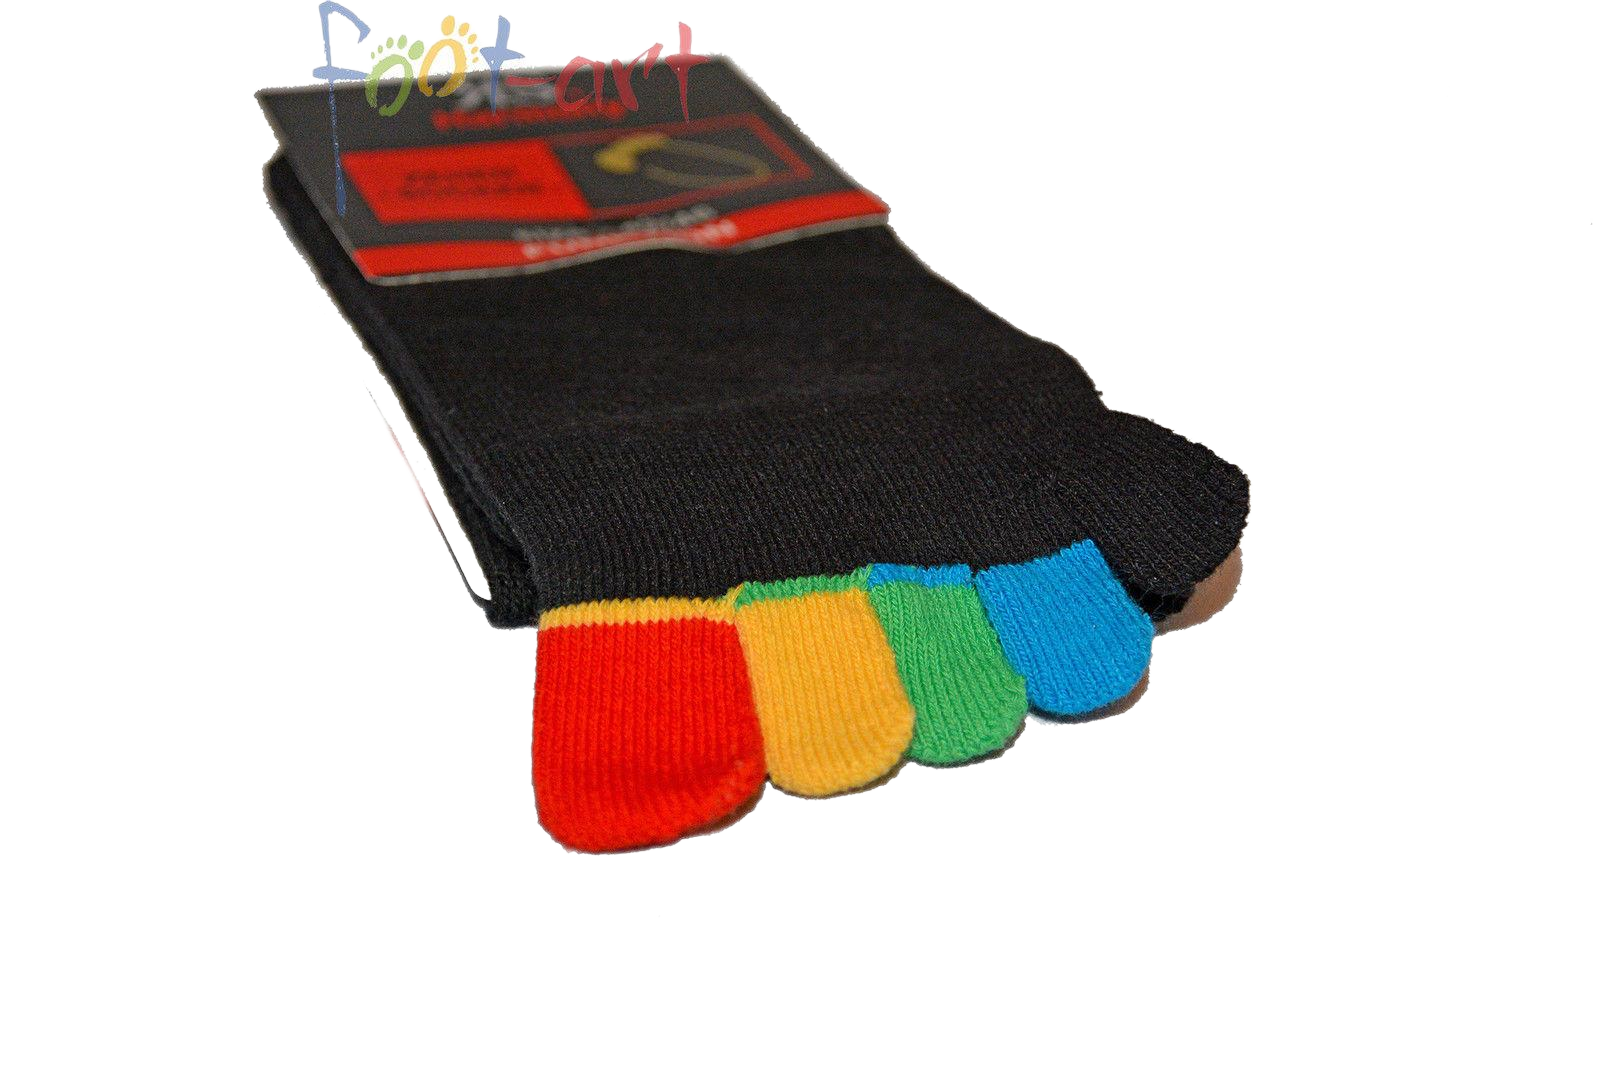 Zehen socken unisex mit Baumwolle geeignet für Damen und Herren bunte Zehensocken in der grundfarbe schwarz